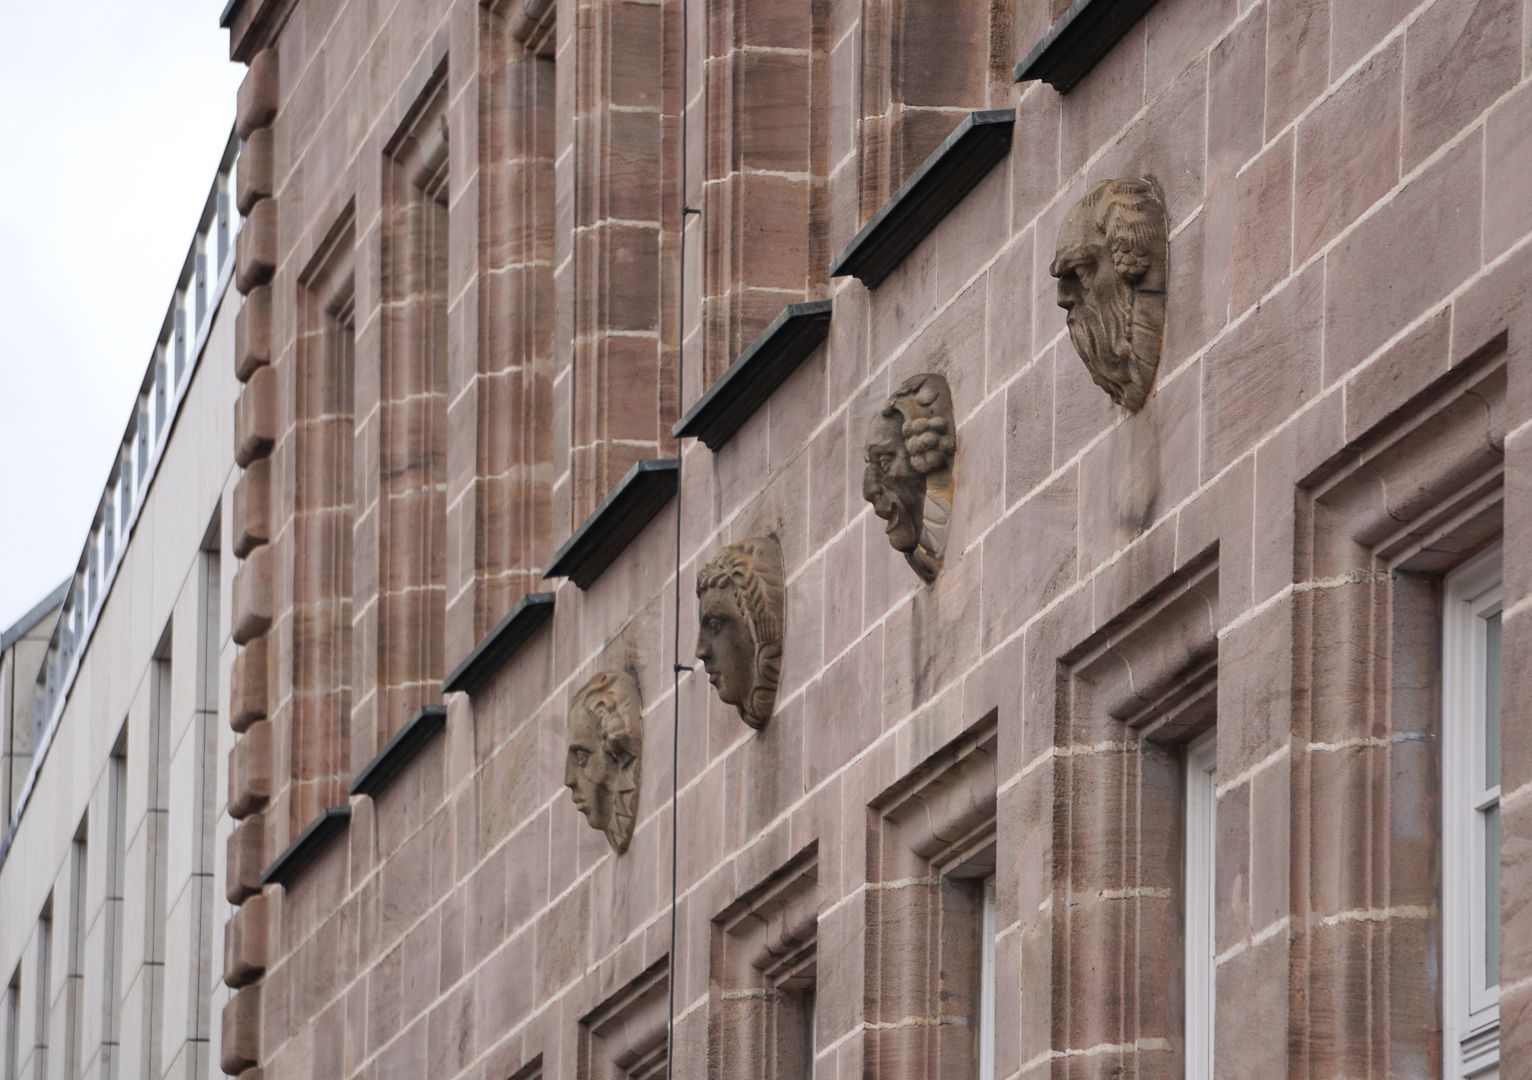 Fassadenschmuck an der ehemaligen AOK / Grillenberger Straße Maskenkopfreihe am nördlichen Gebäudeflügel